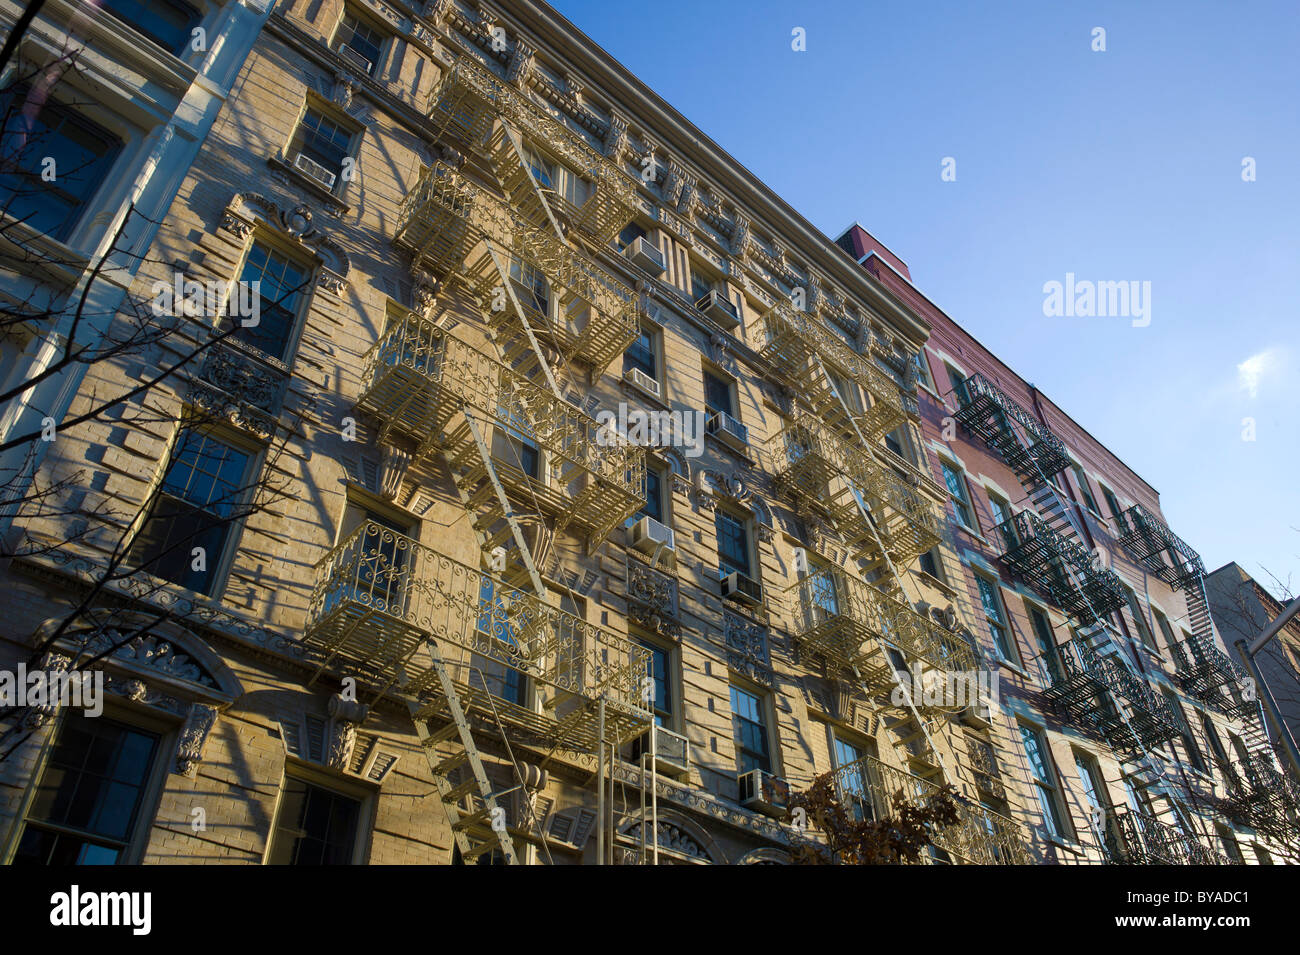 Tipico di ghisa in architettura del quartiere di SoHo, a Sud di Houston Street, Manhattan, New York, Stati Uniti d'America Foto Stock